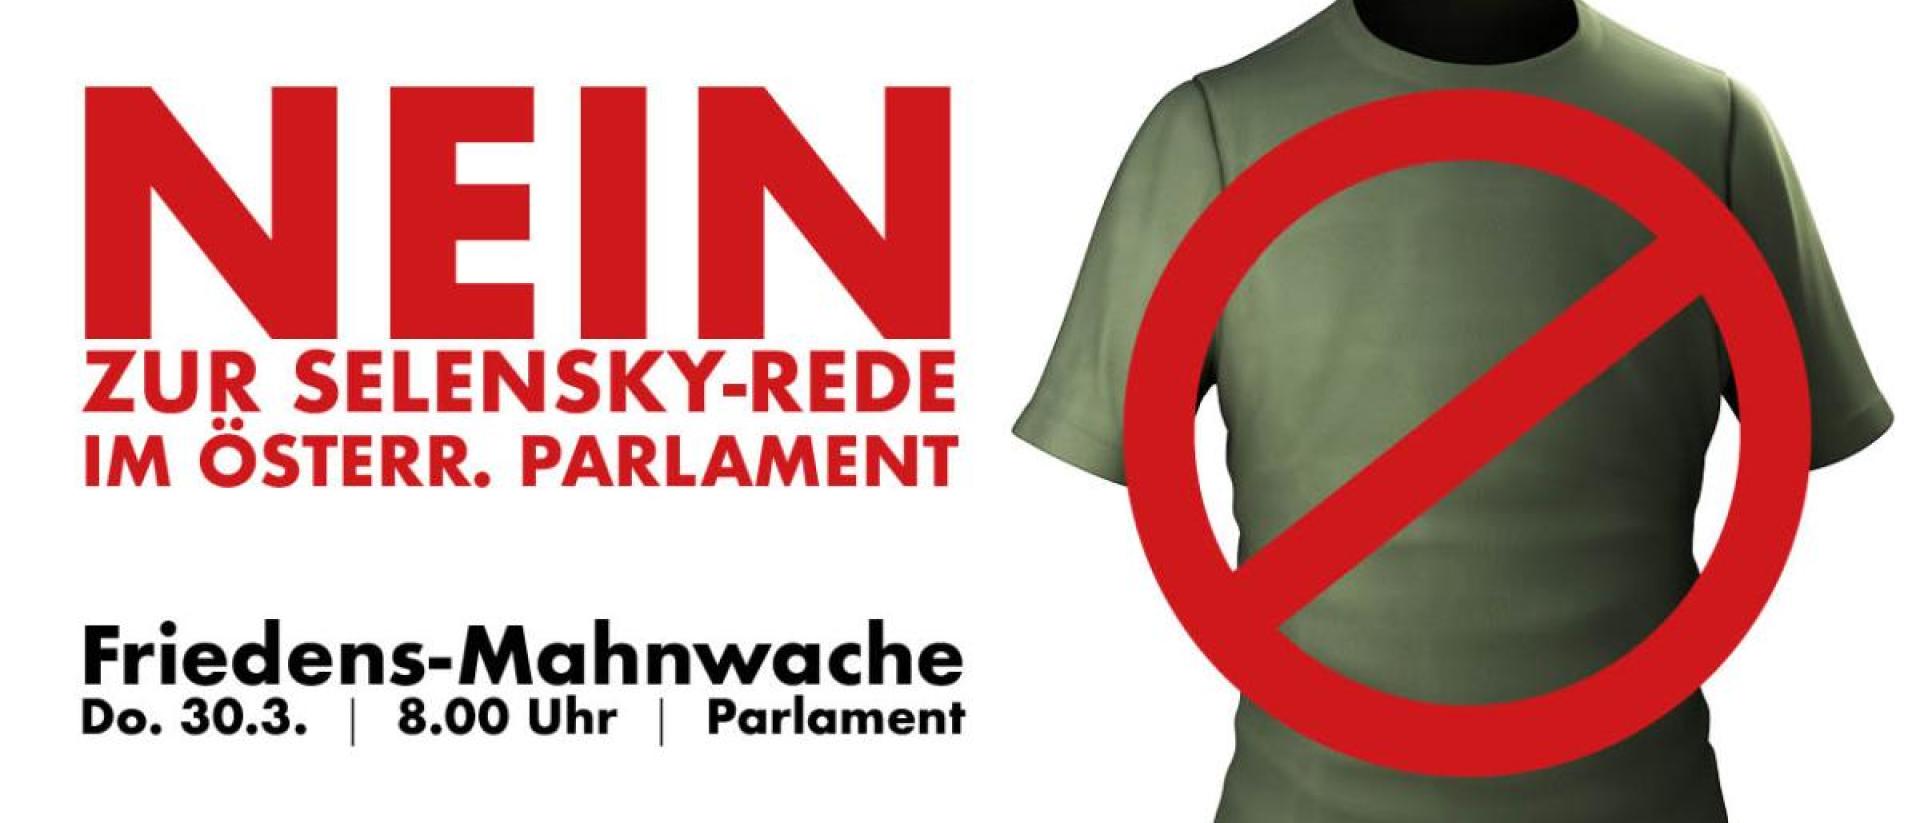 Nein zur Selensky-Rede im Parlament